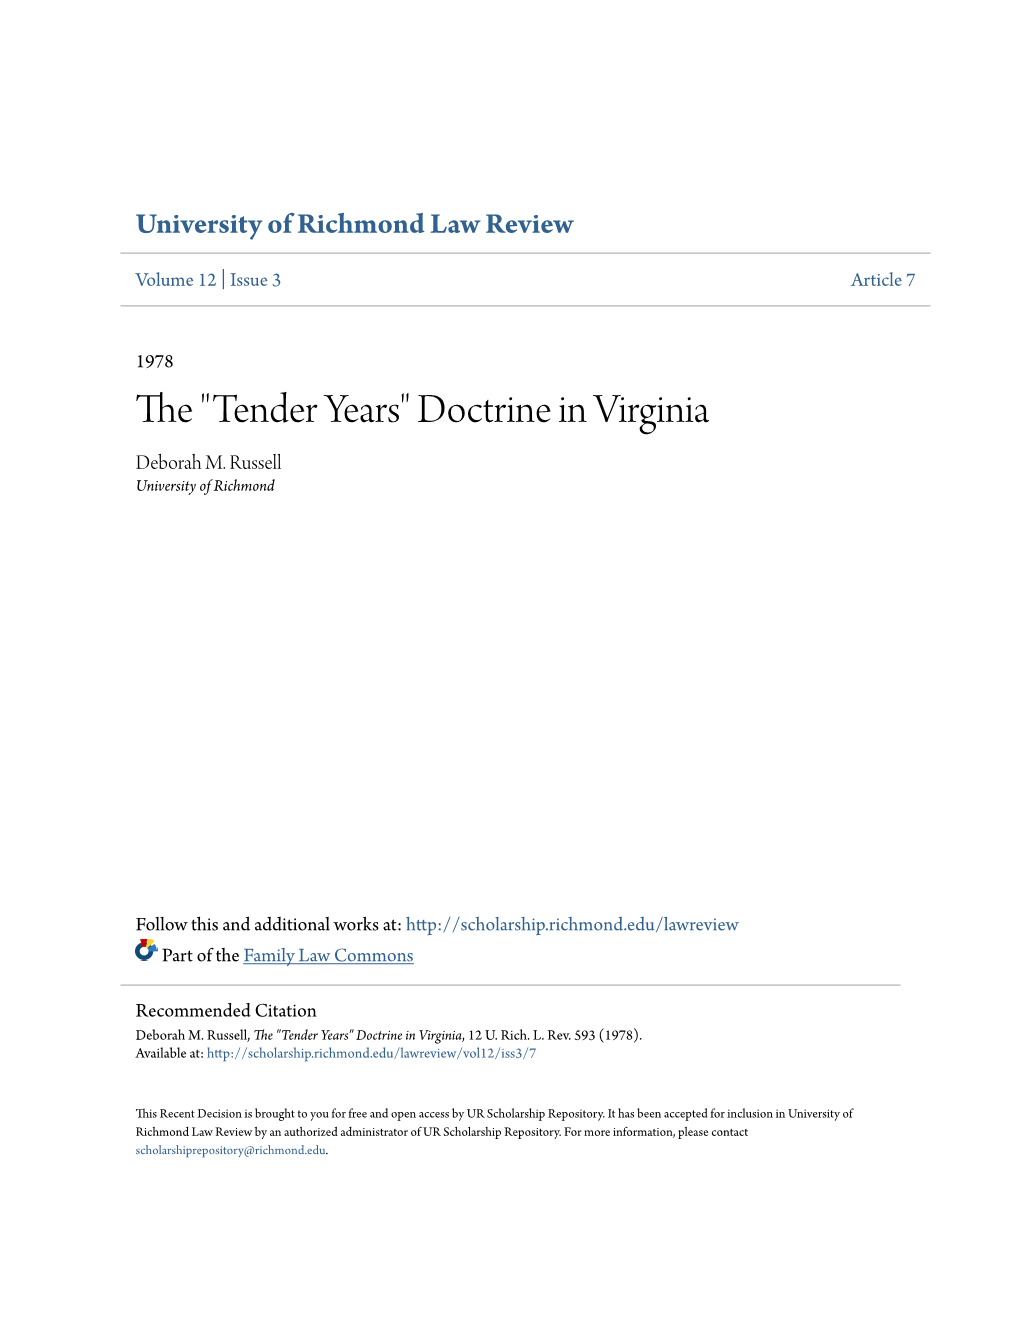 Tender Years" Doctrine in Virginia Deborah M